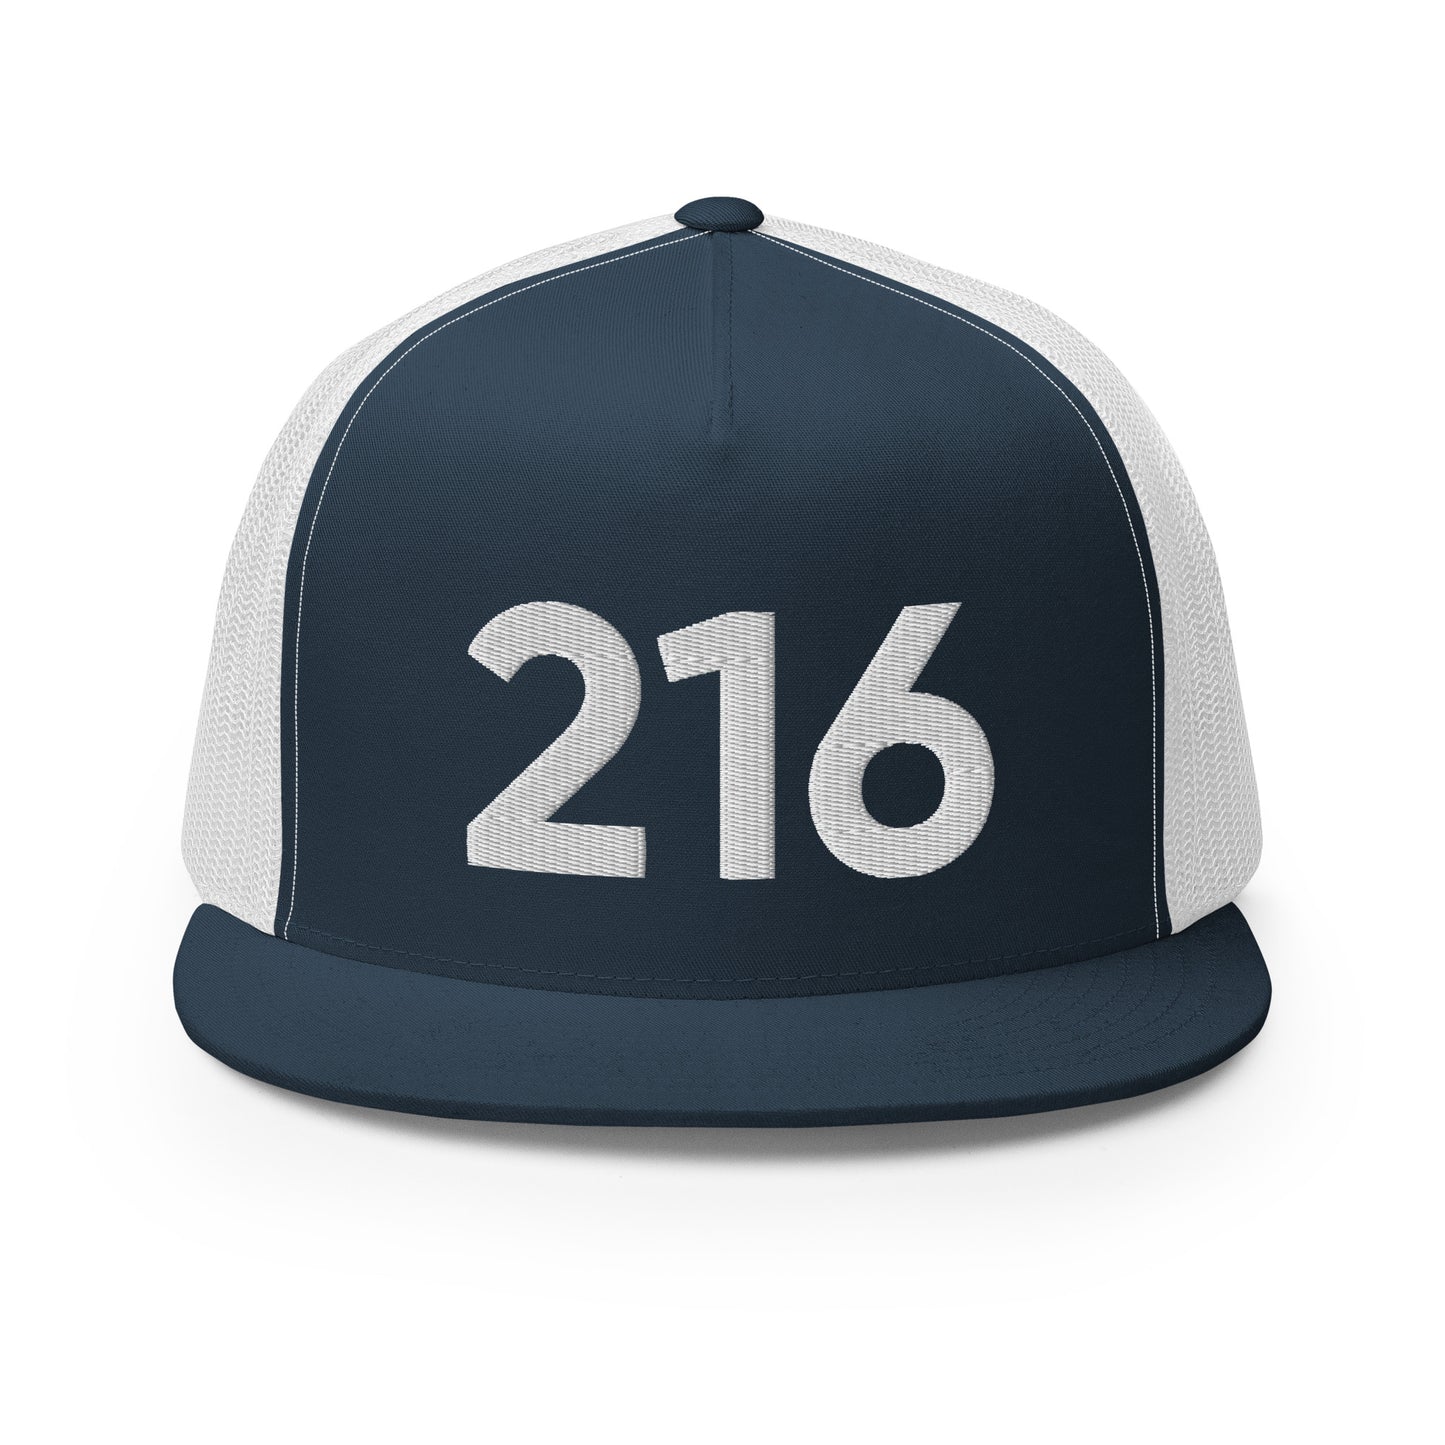 216 Cleveland Trucker Hat